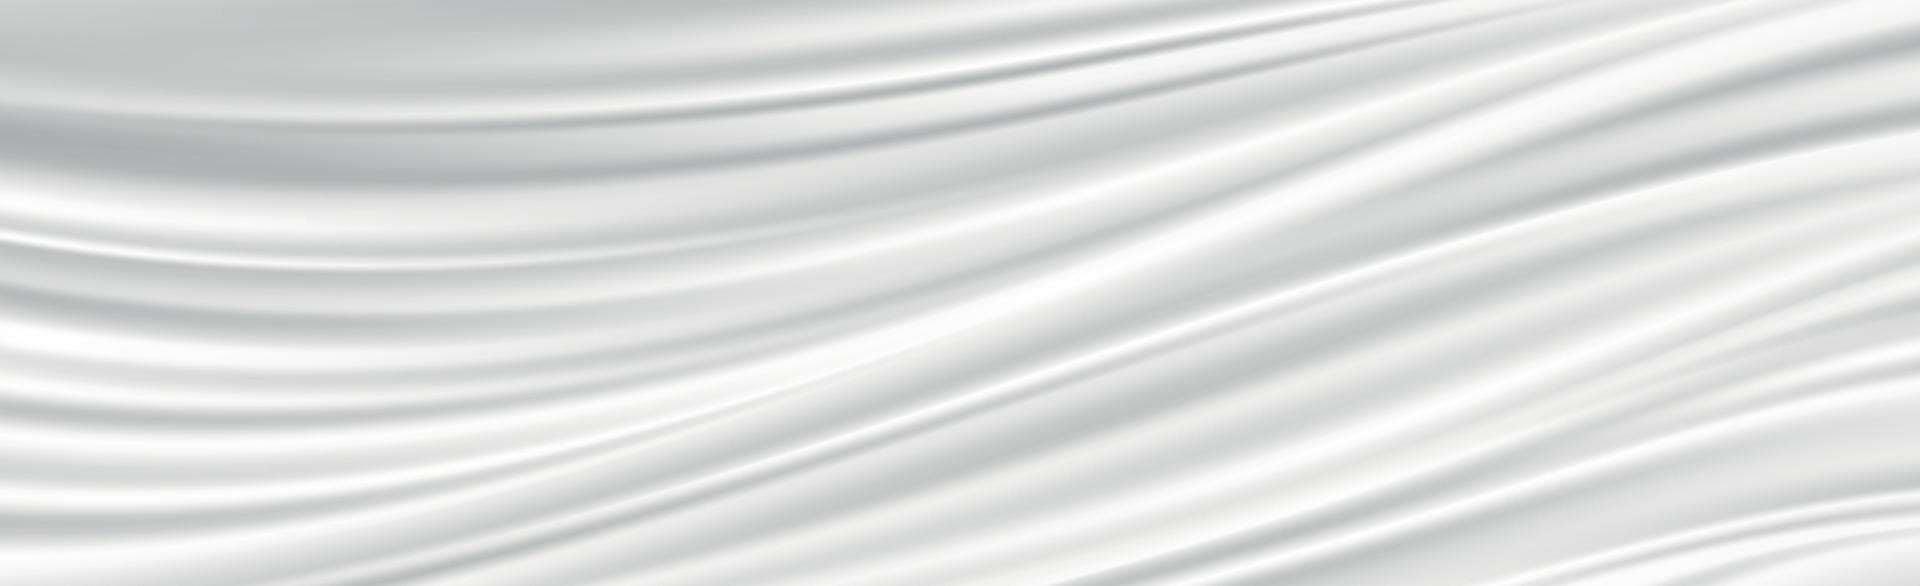 abstrakter weißer Hintergrund wellige weiße Linienfalten vektor